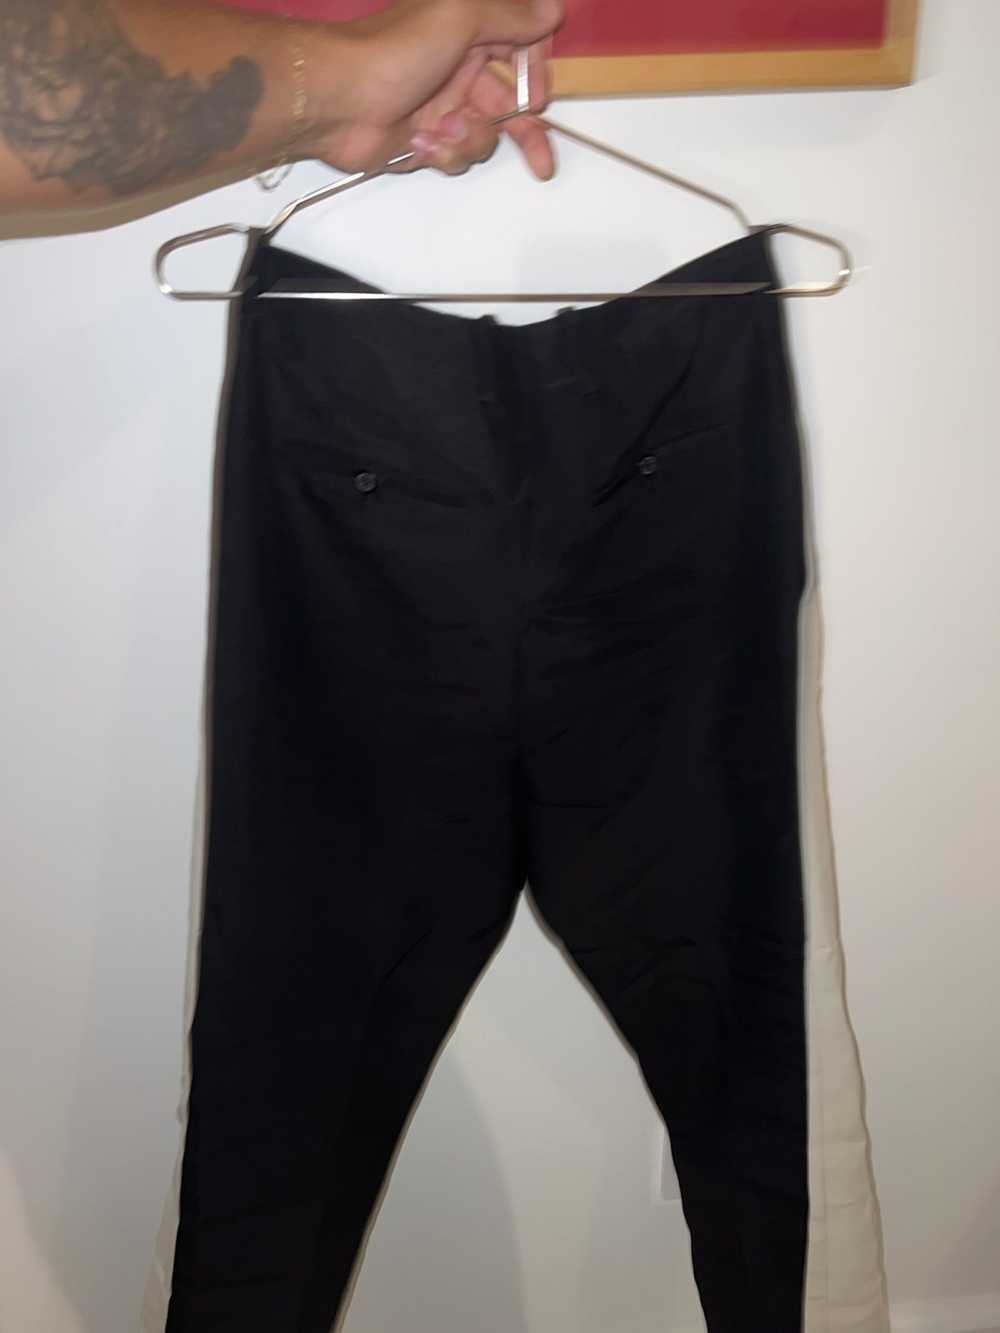 Lanvin Lanvin FW’14 trouser - image 5